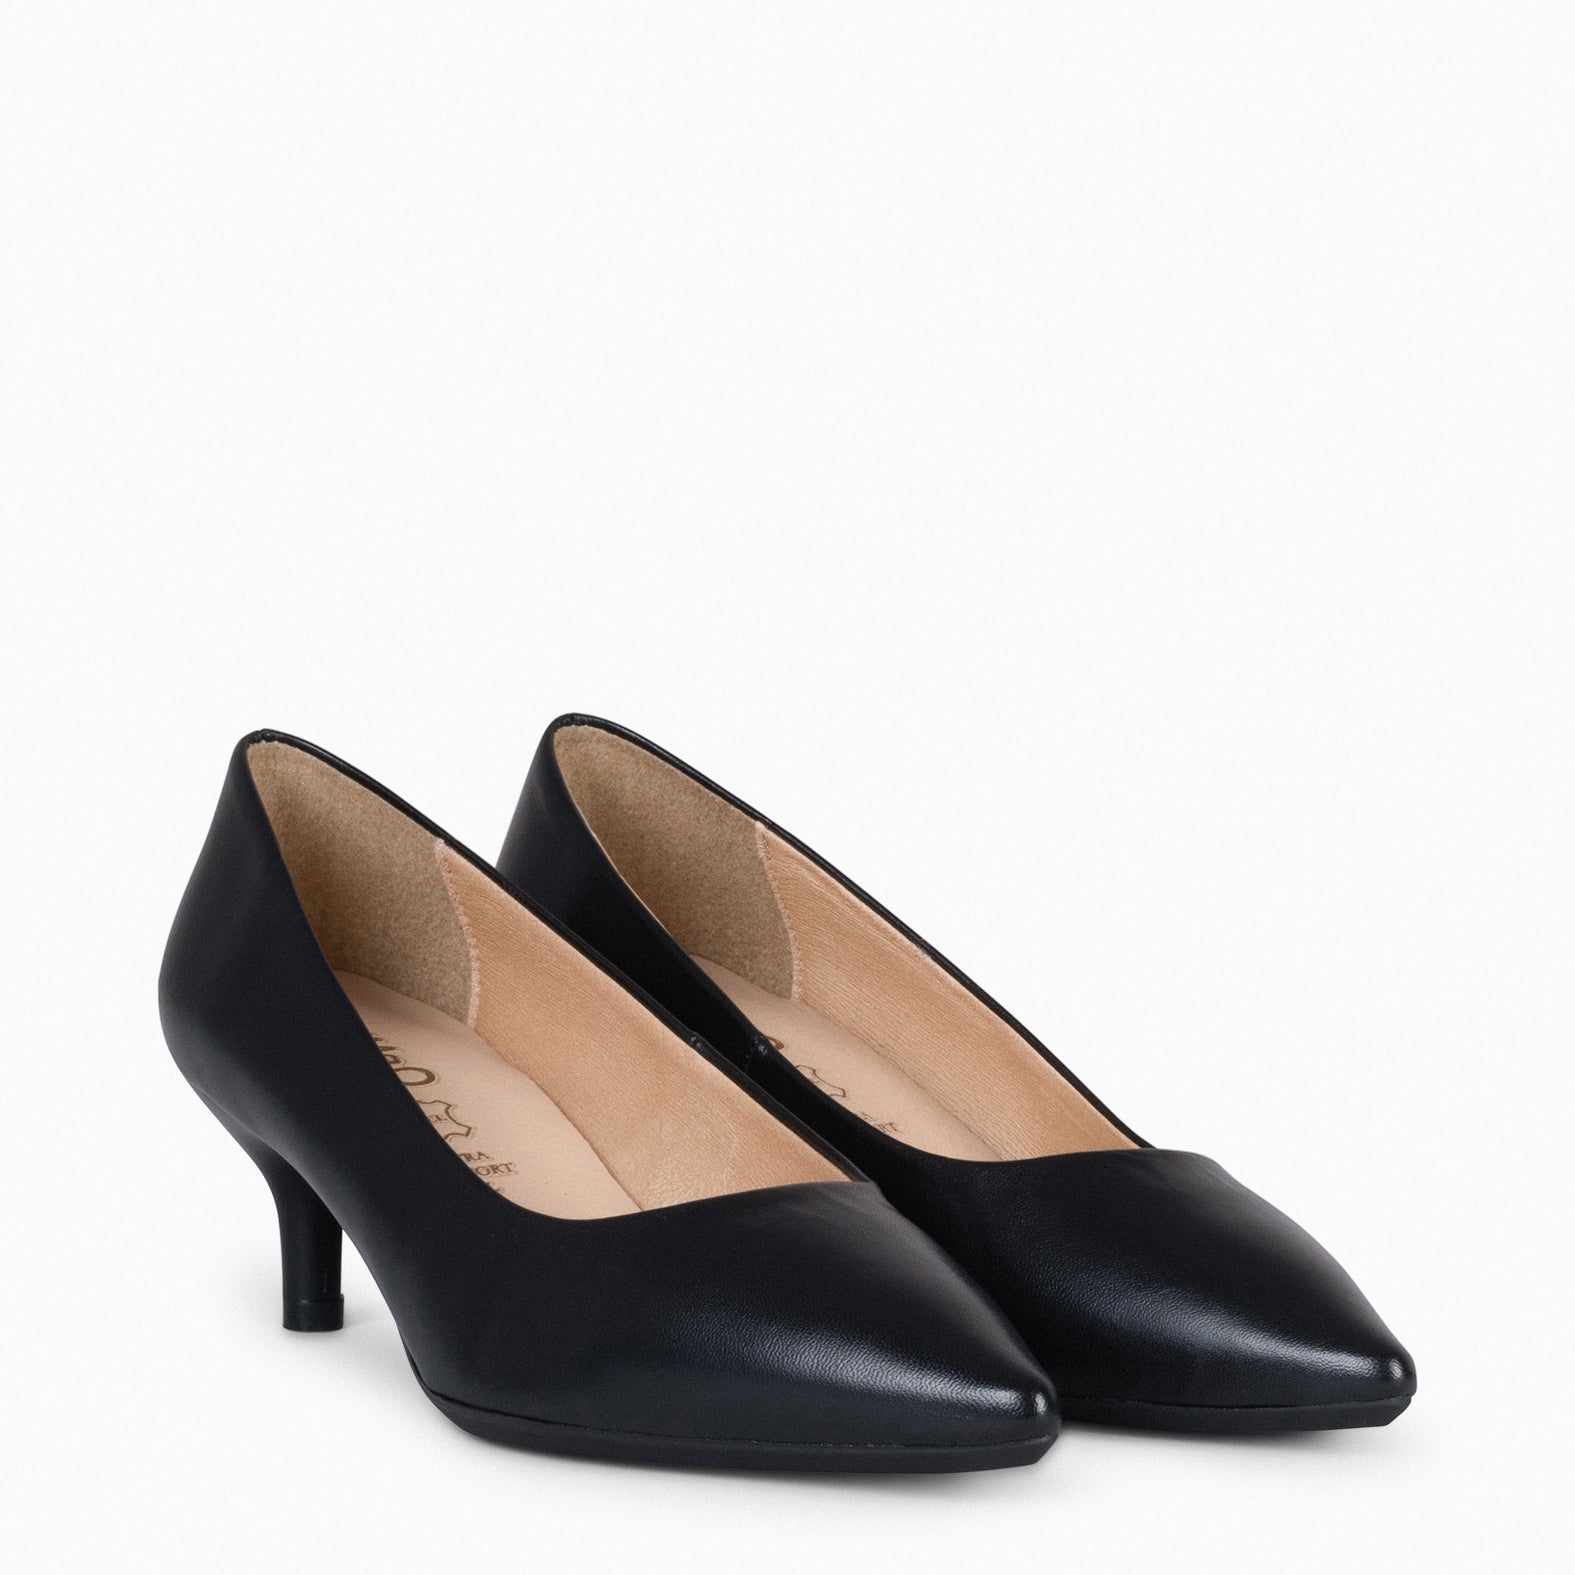 URBAN KITTEN – BLACK nappa leather kitten heels